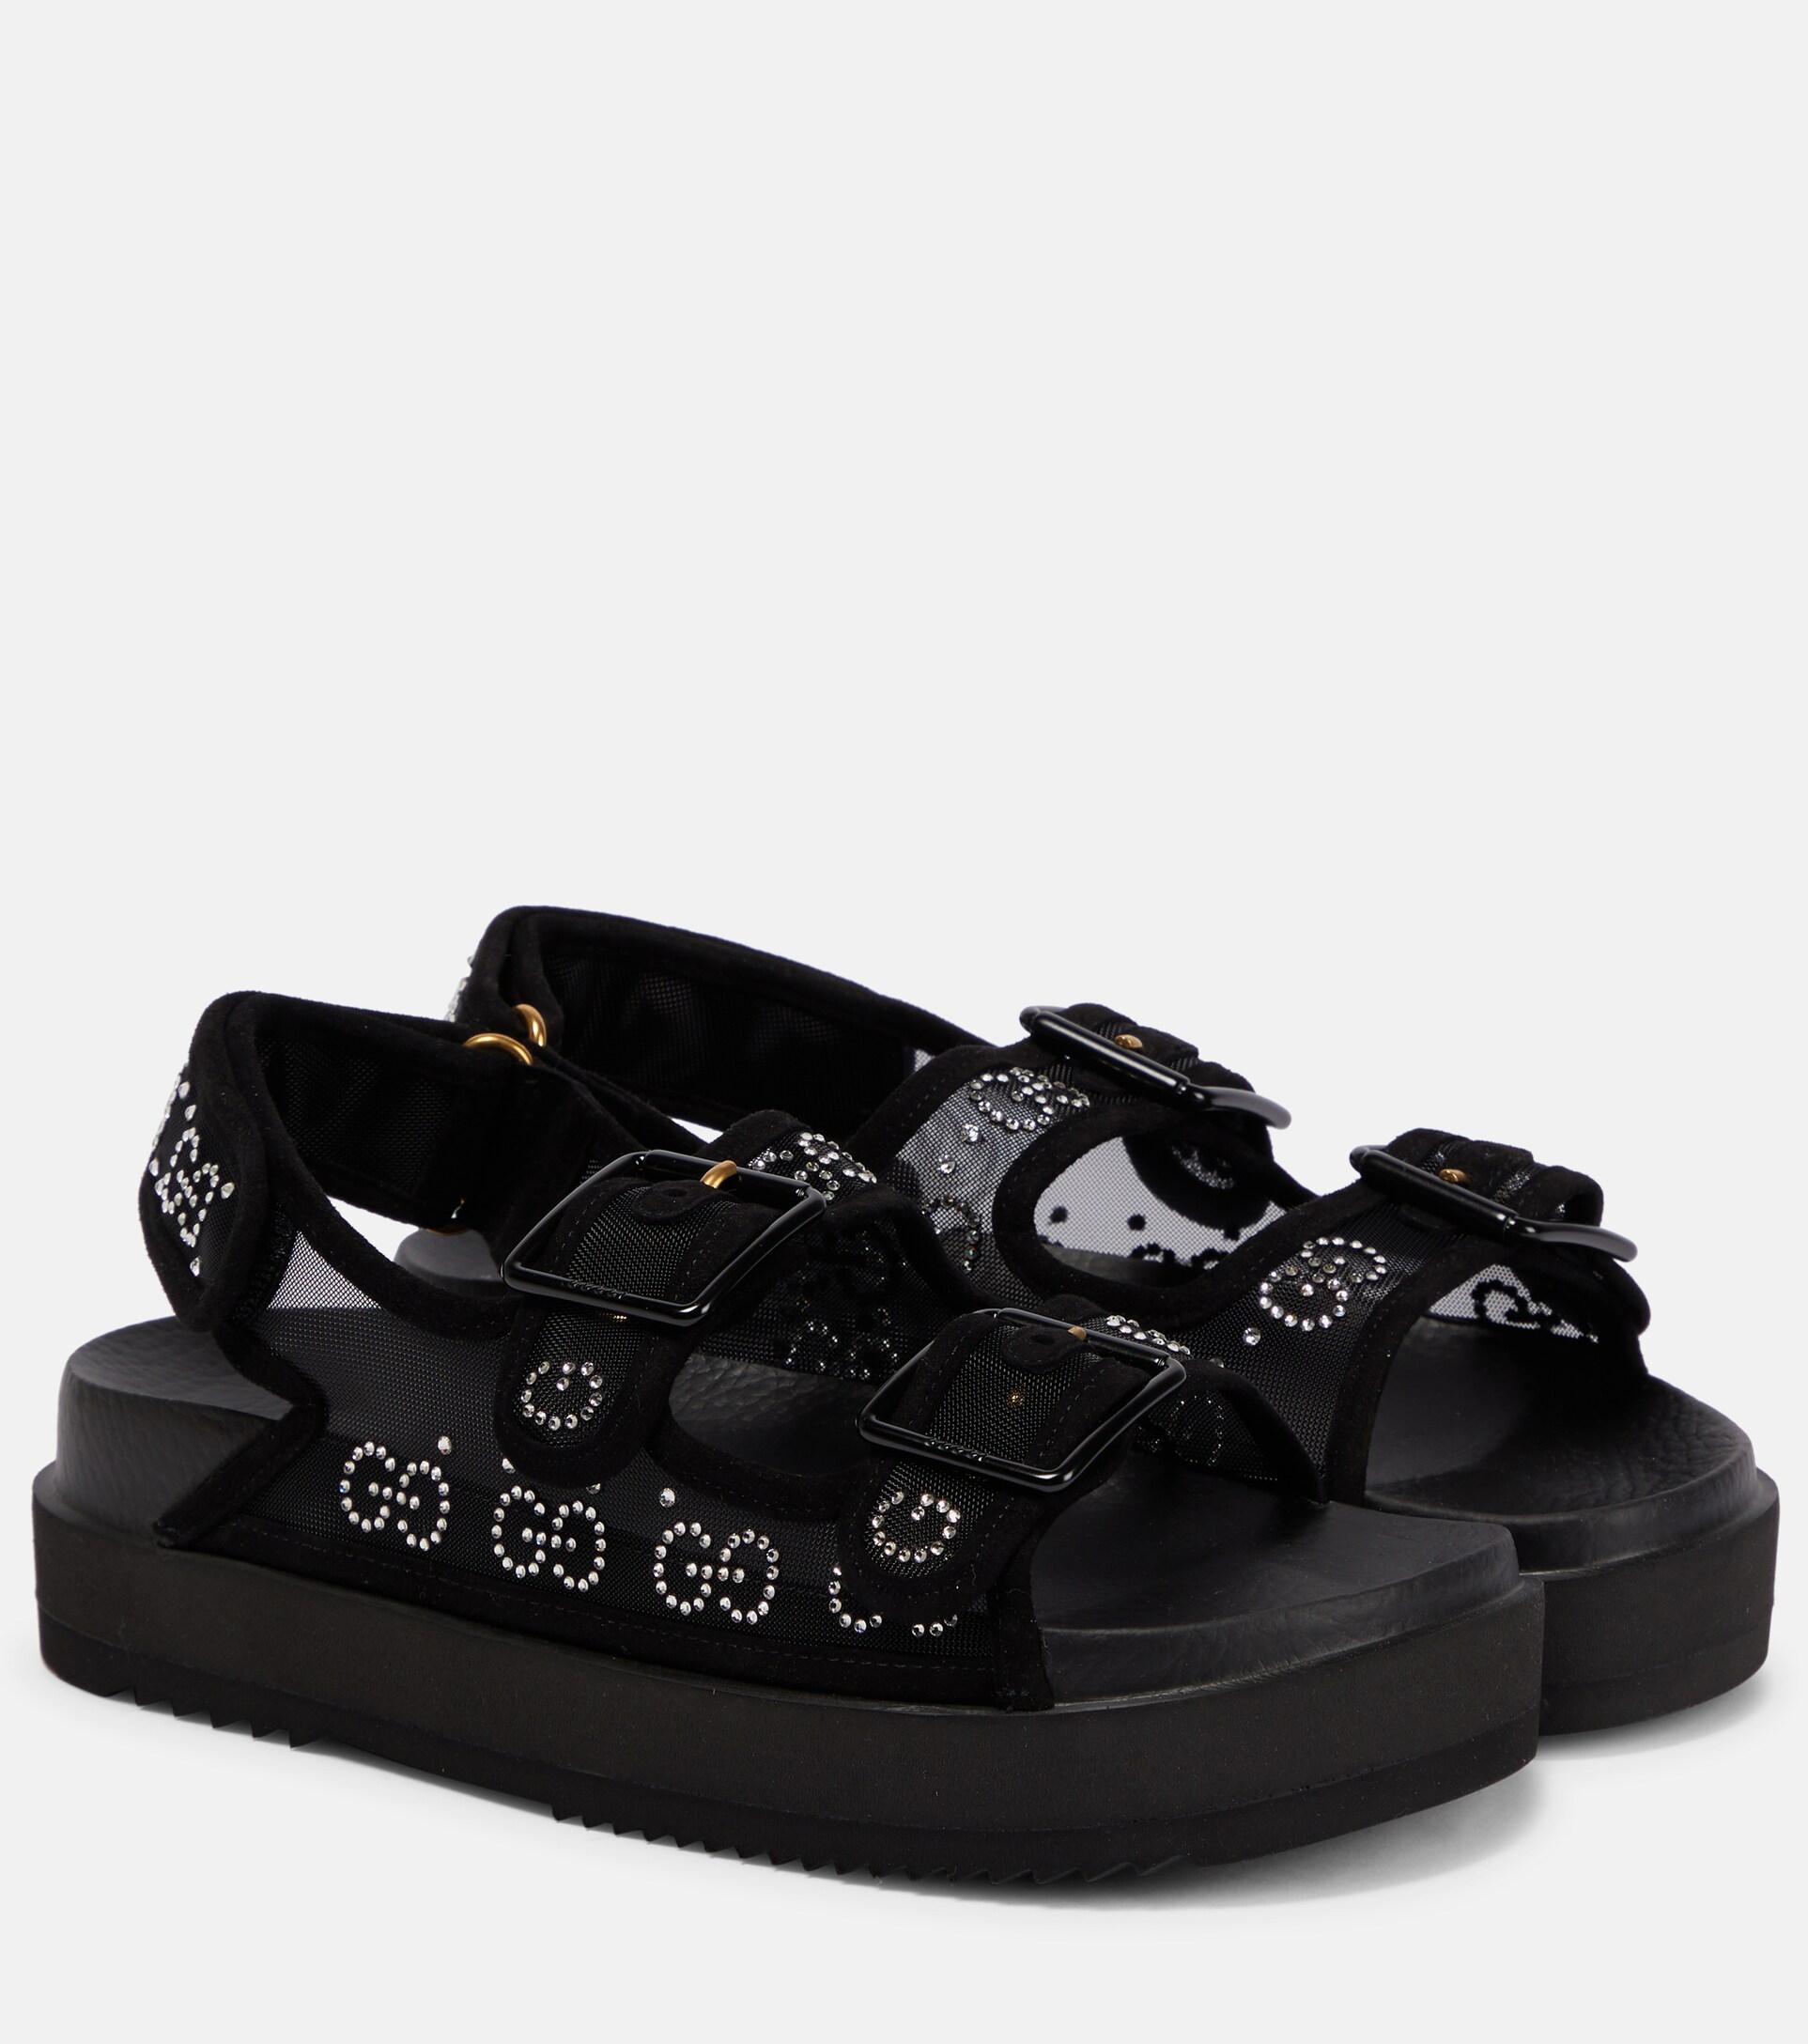 Gucci GG Embellished Platform Sandals in Black | Lyst